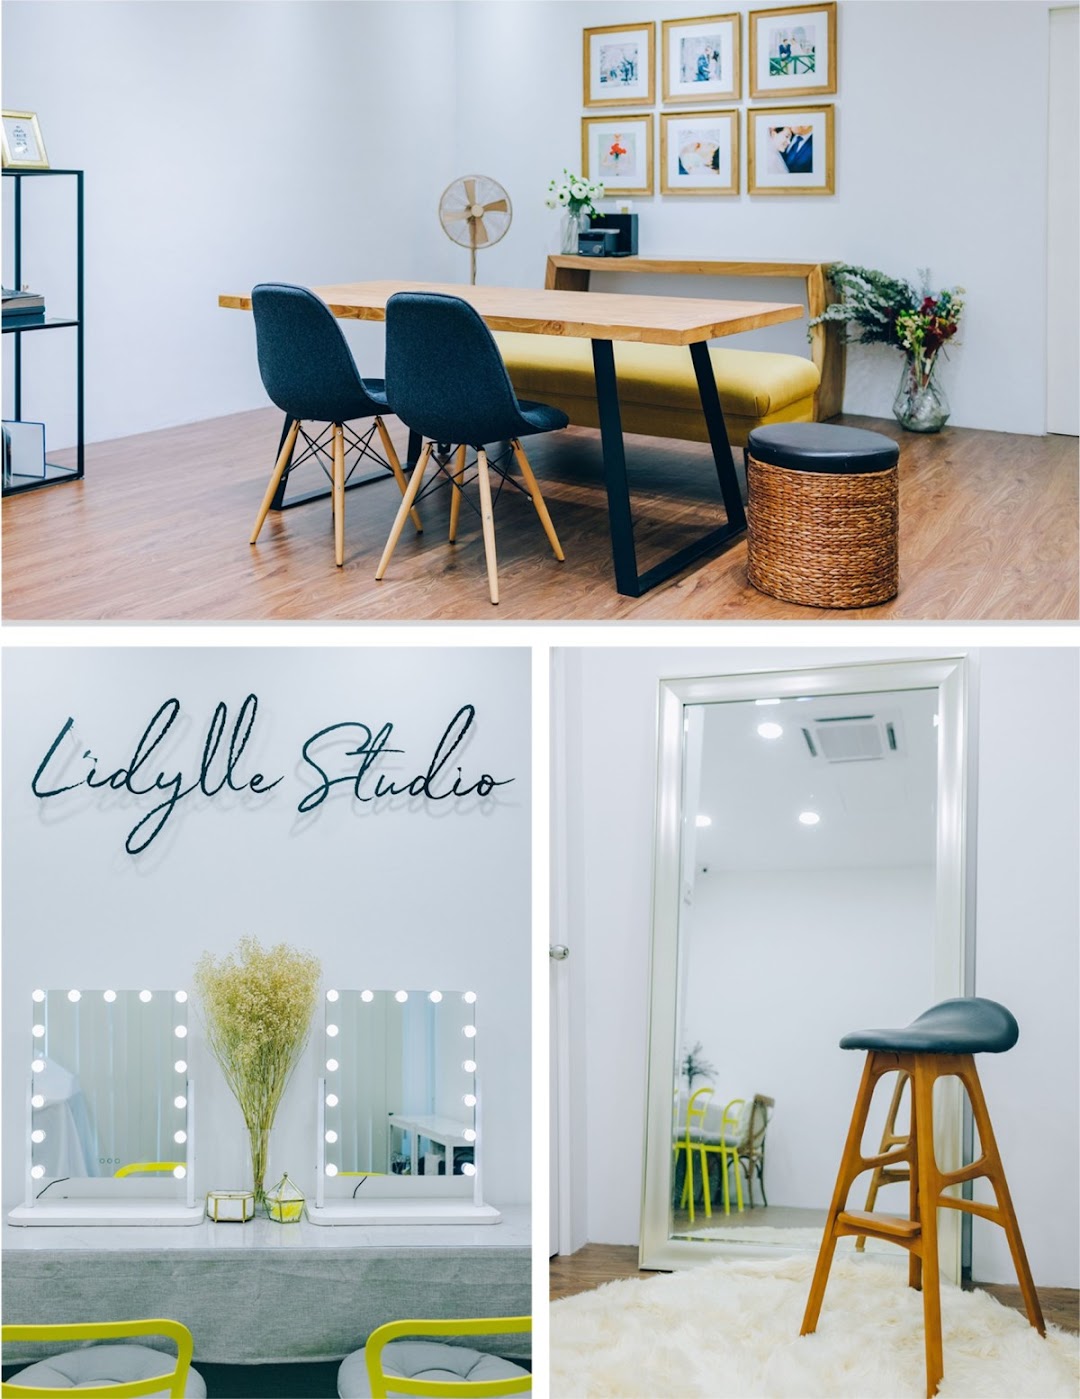 Lidylle Studio (Beauty Studio & Academy)